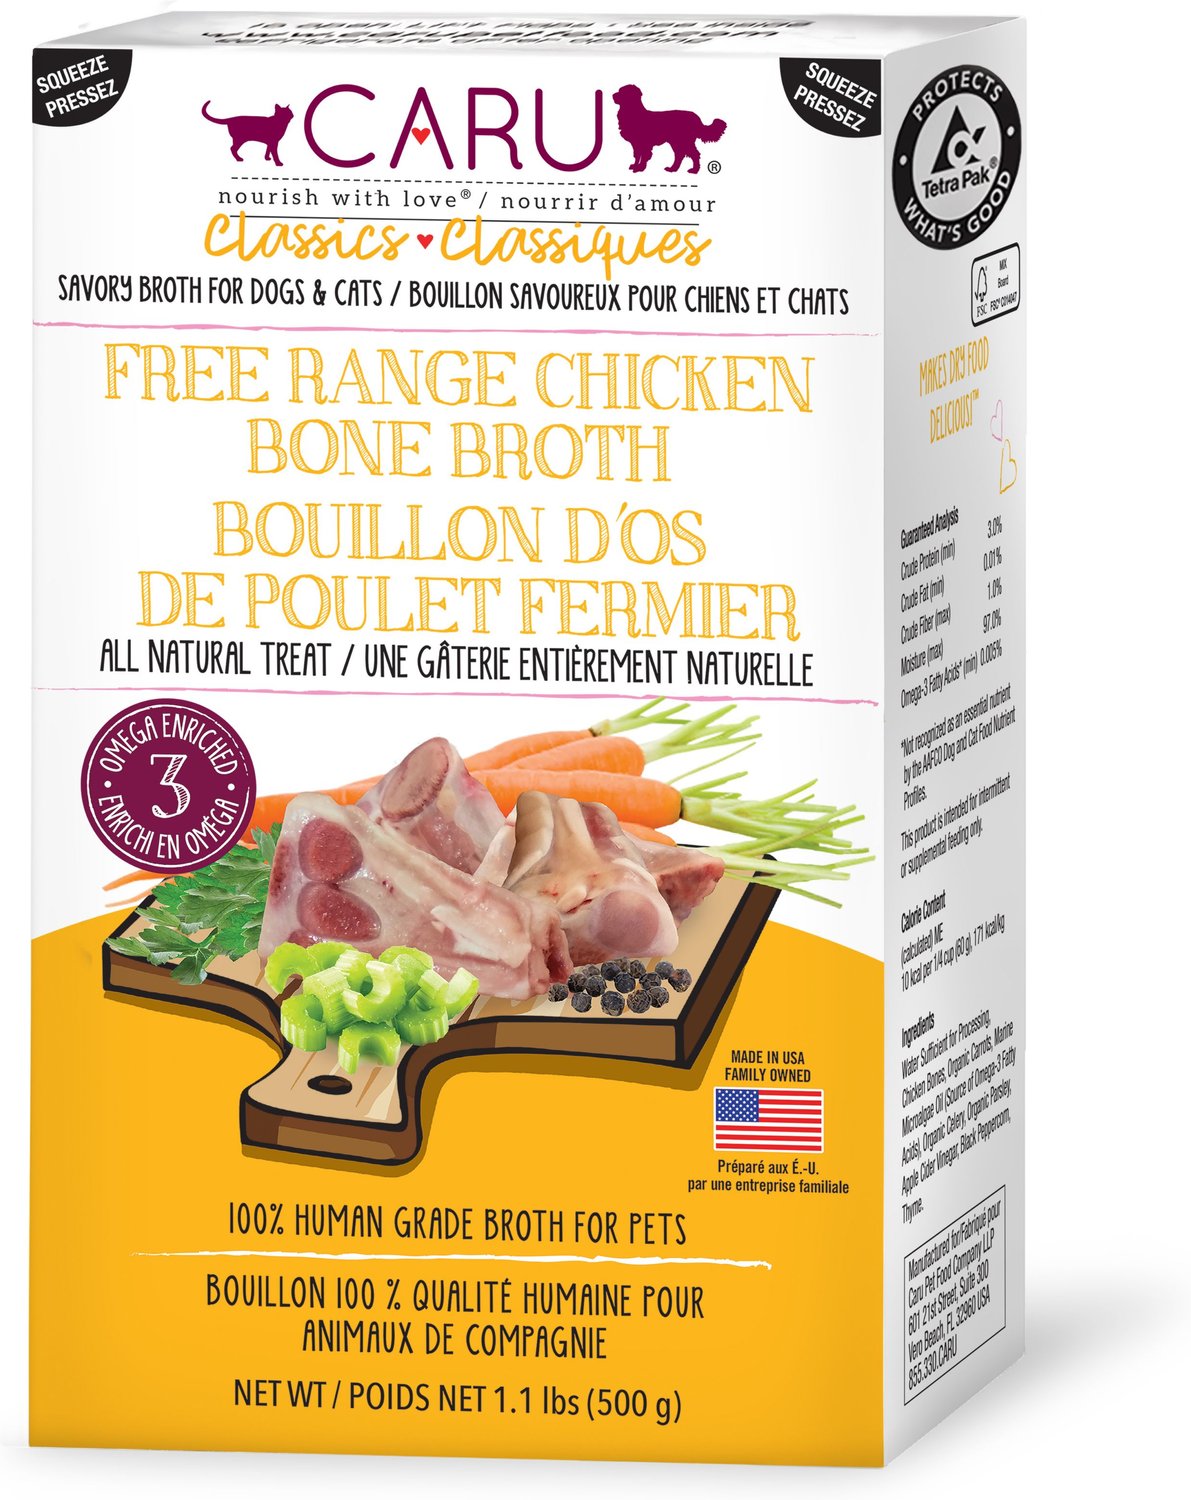 Caru Free Range Chicken Bone Broth for Dogs & Cats, 1.1lb box